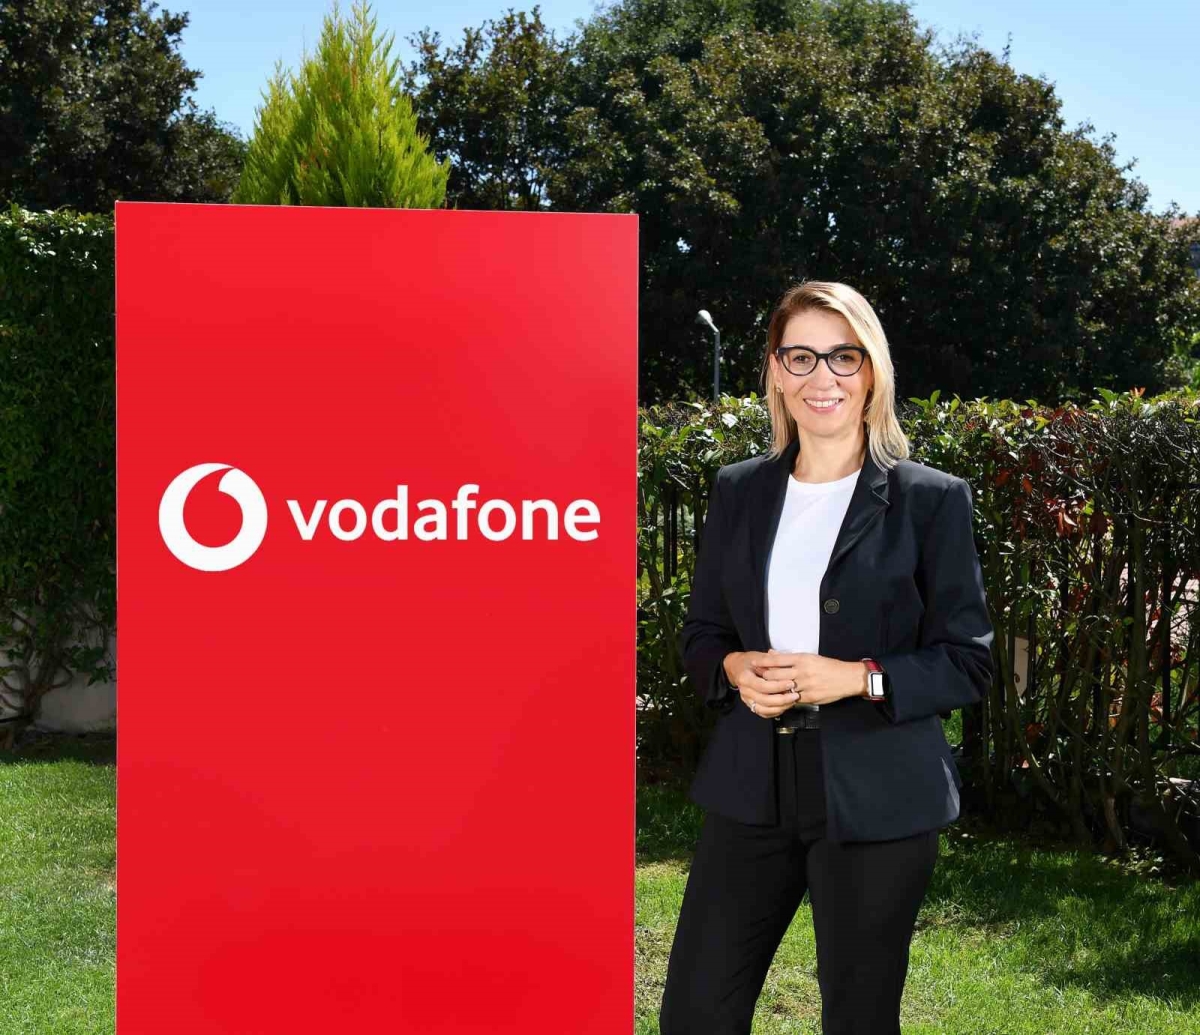 Vodafone Türkiye’ye müşteri deneyiminde uluslararası ödüller
